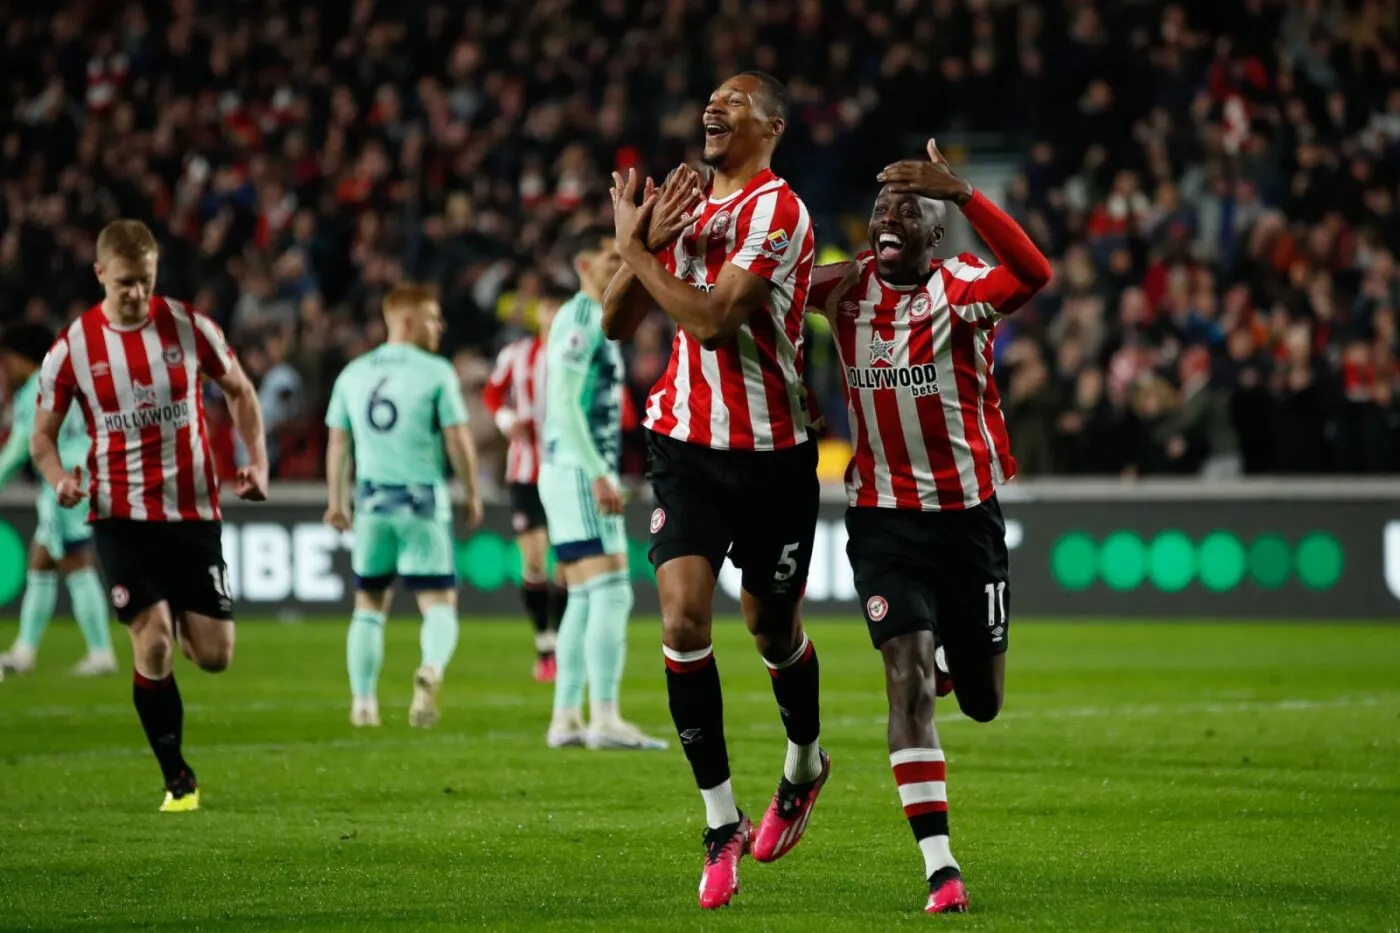 Pronostic Southampton Brentford : Analyse, cotes et prono du match de Premier League